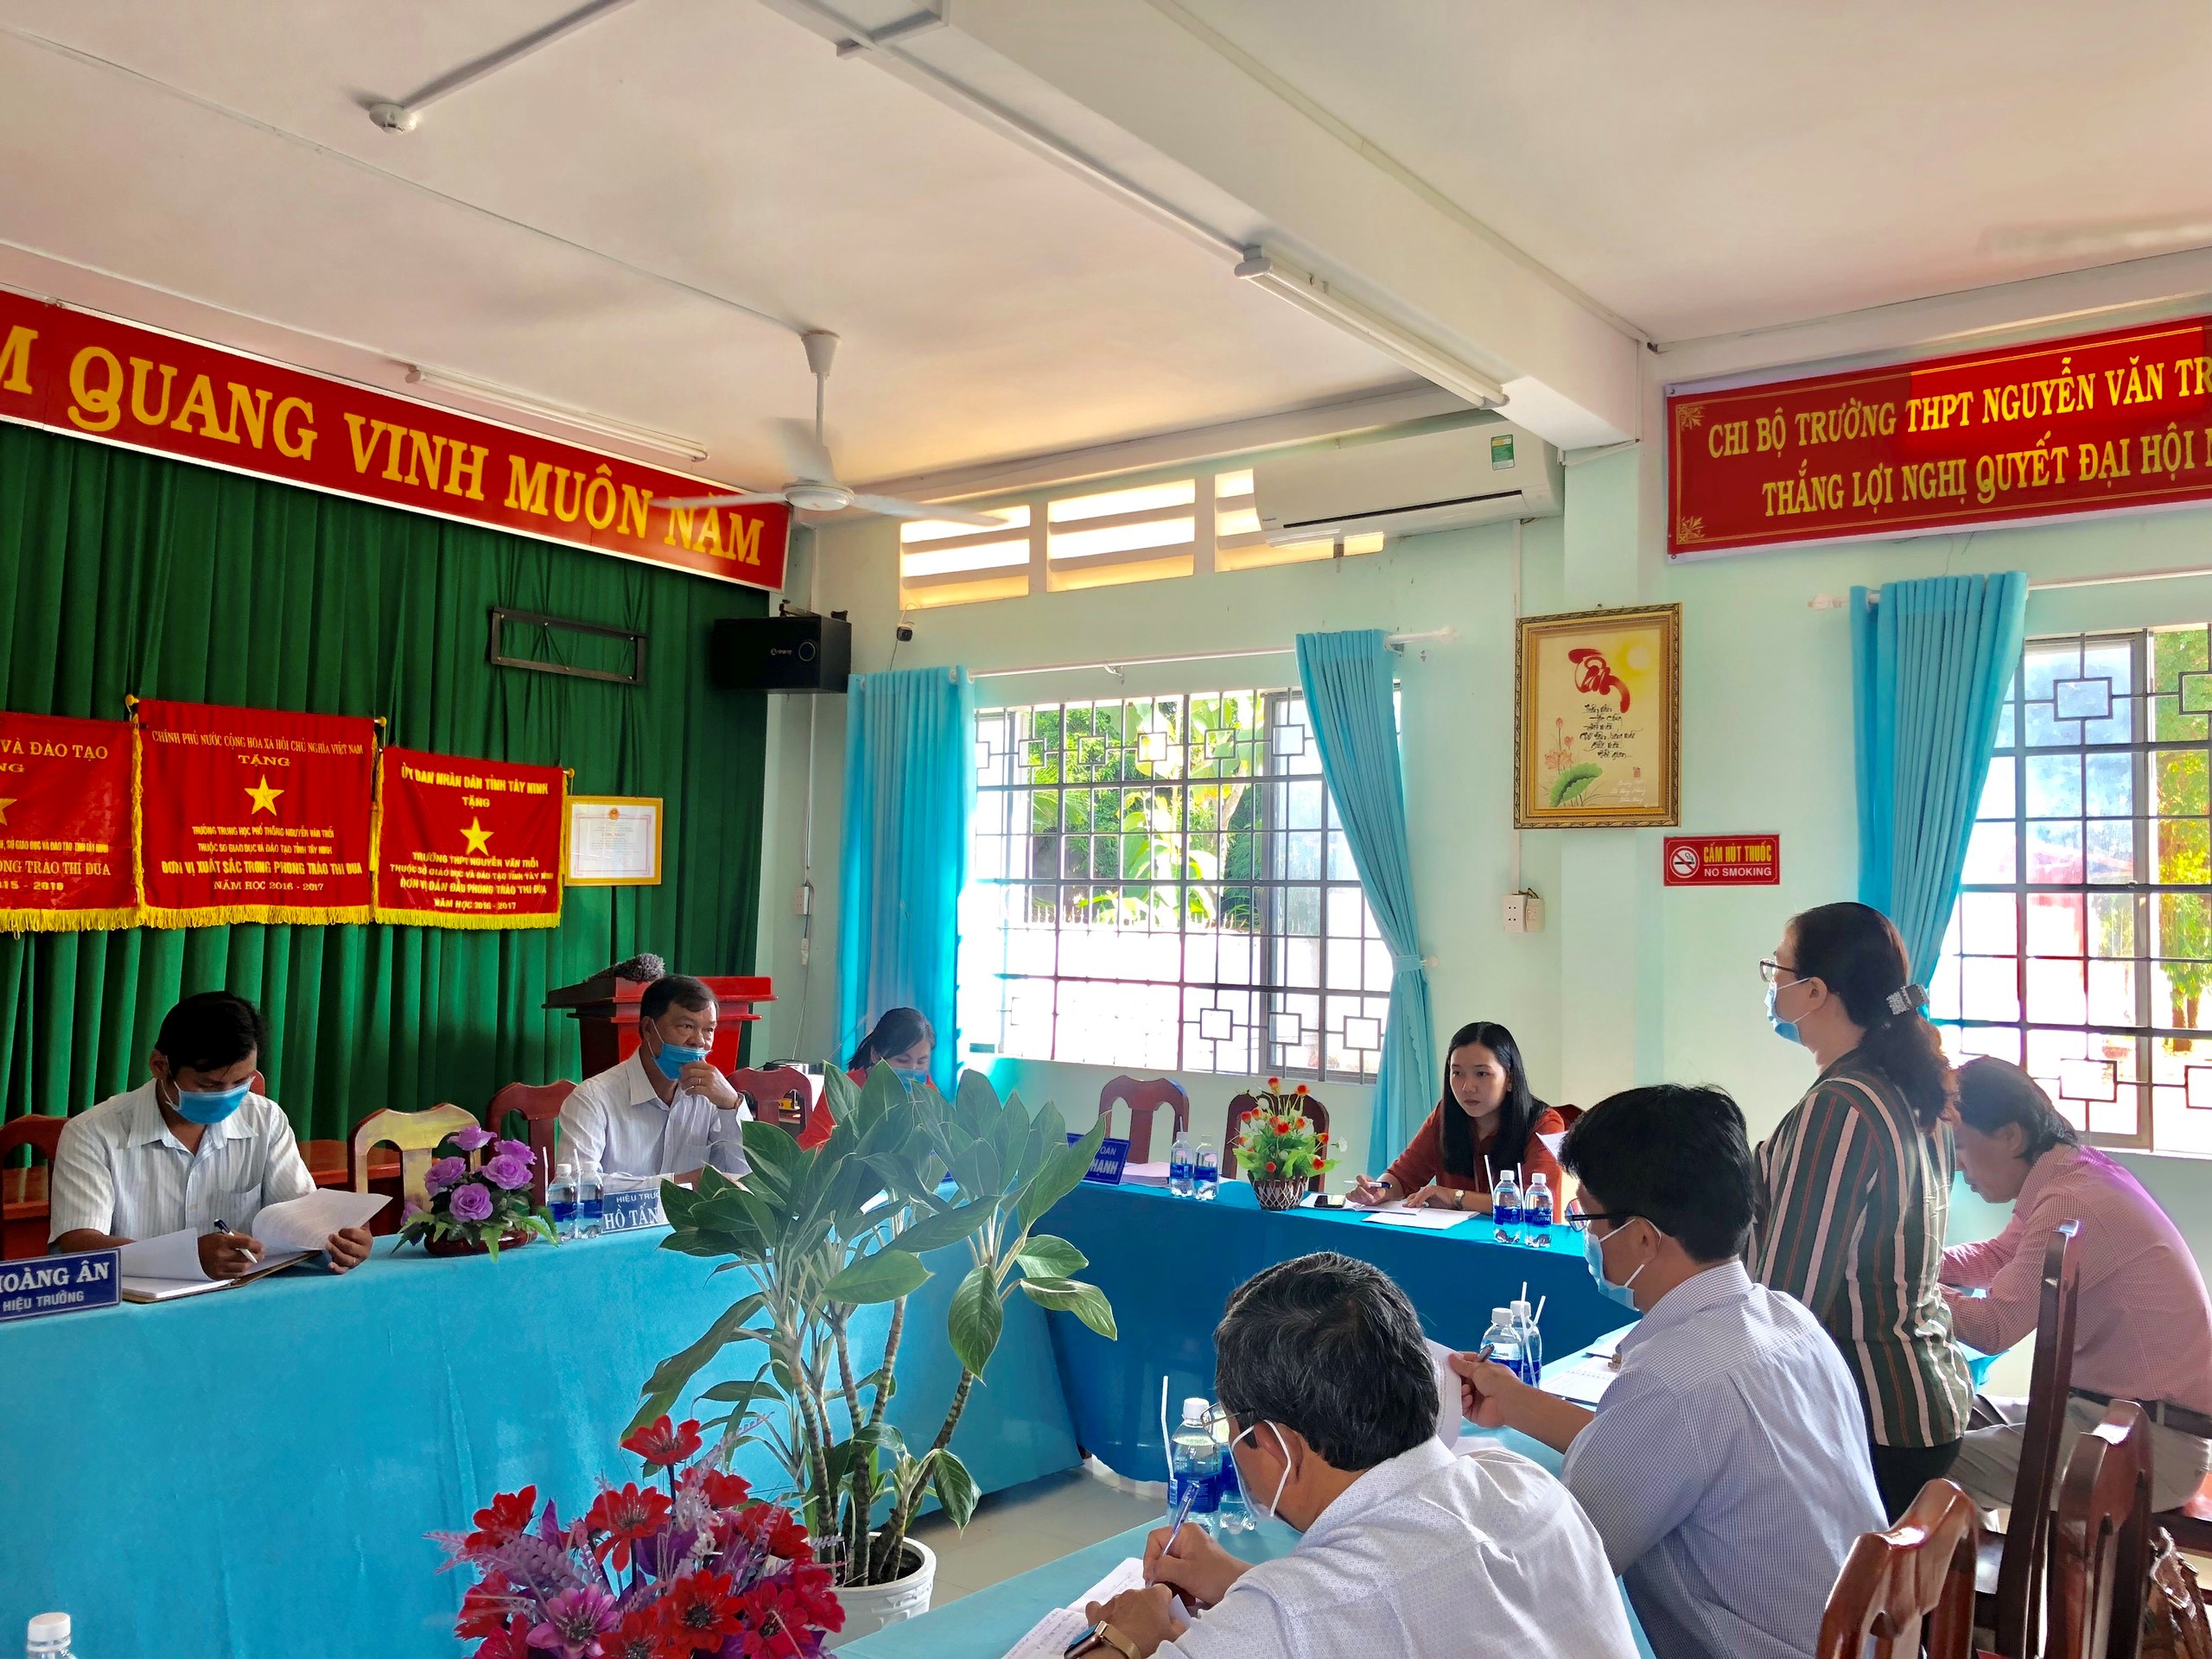 Ban Văn hóa - Xã hội Hội đồng nhân dân tỉnh: Khảo sát tình hình thực hiện cơ chế tự chủ tại Trường THPT Nguyễn Văn Trỗi